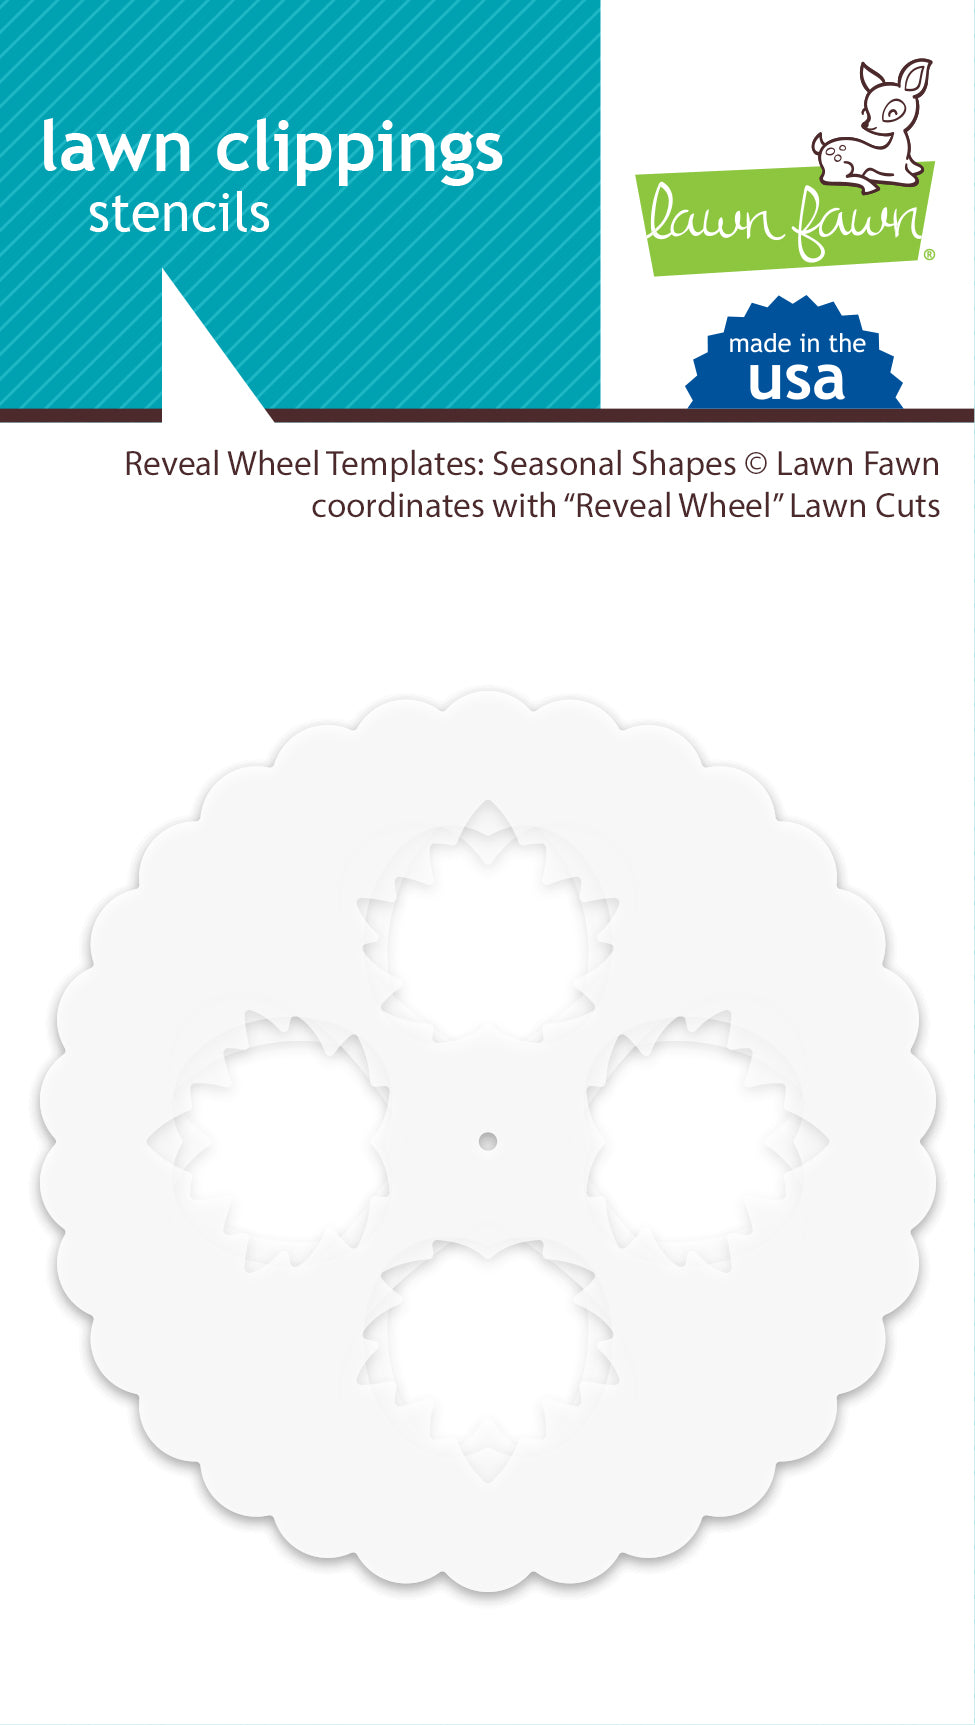 reveal wheel templates: seasonal shapes